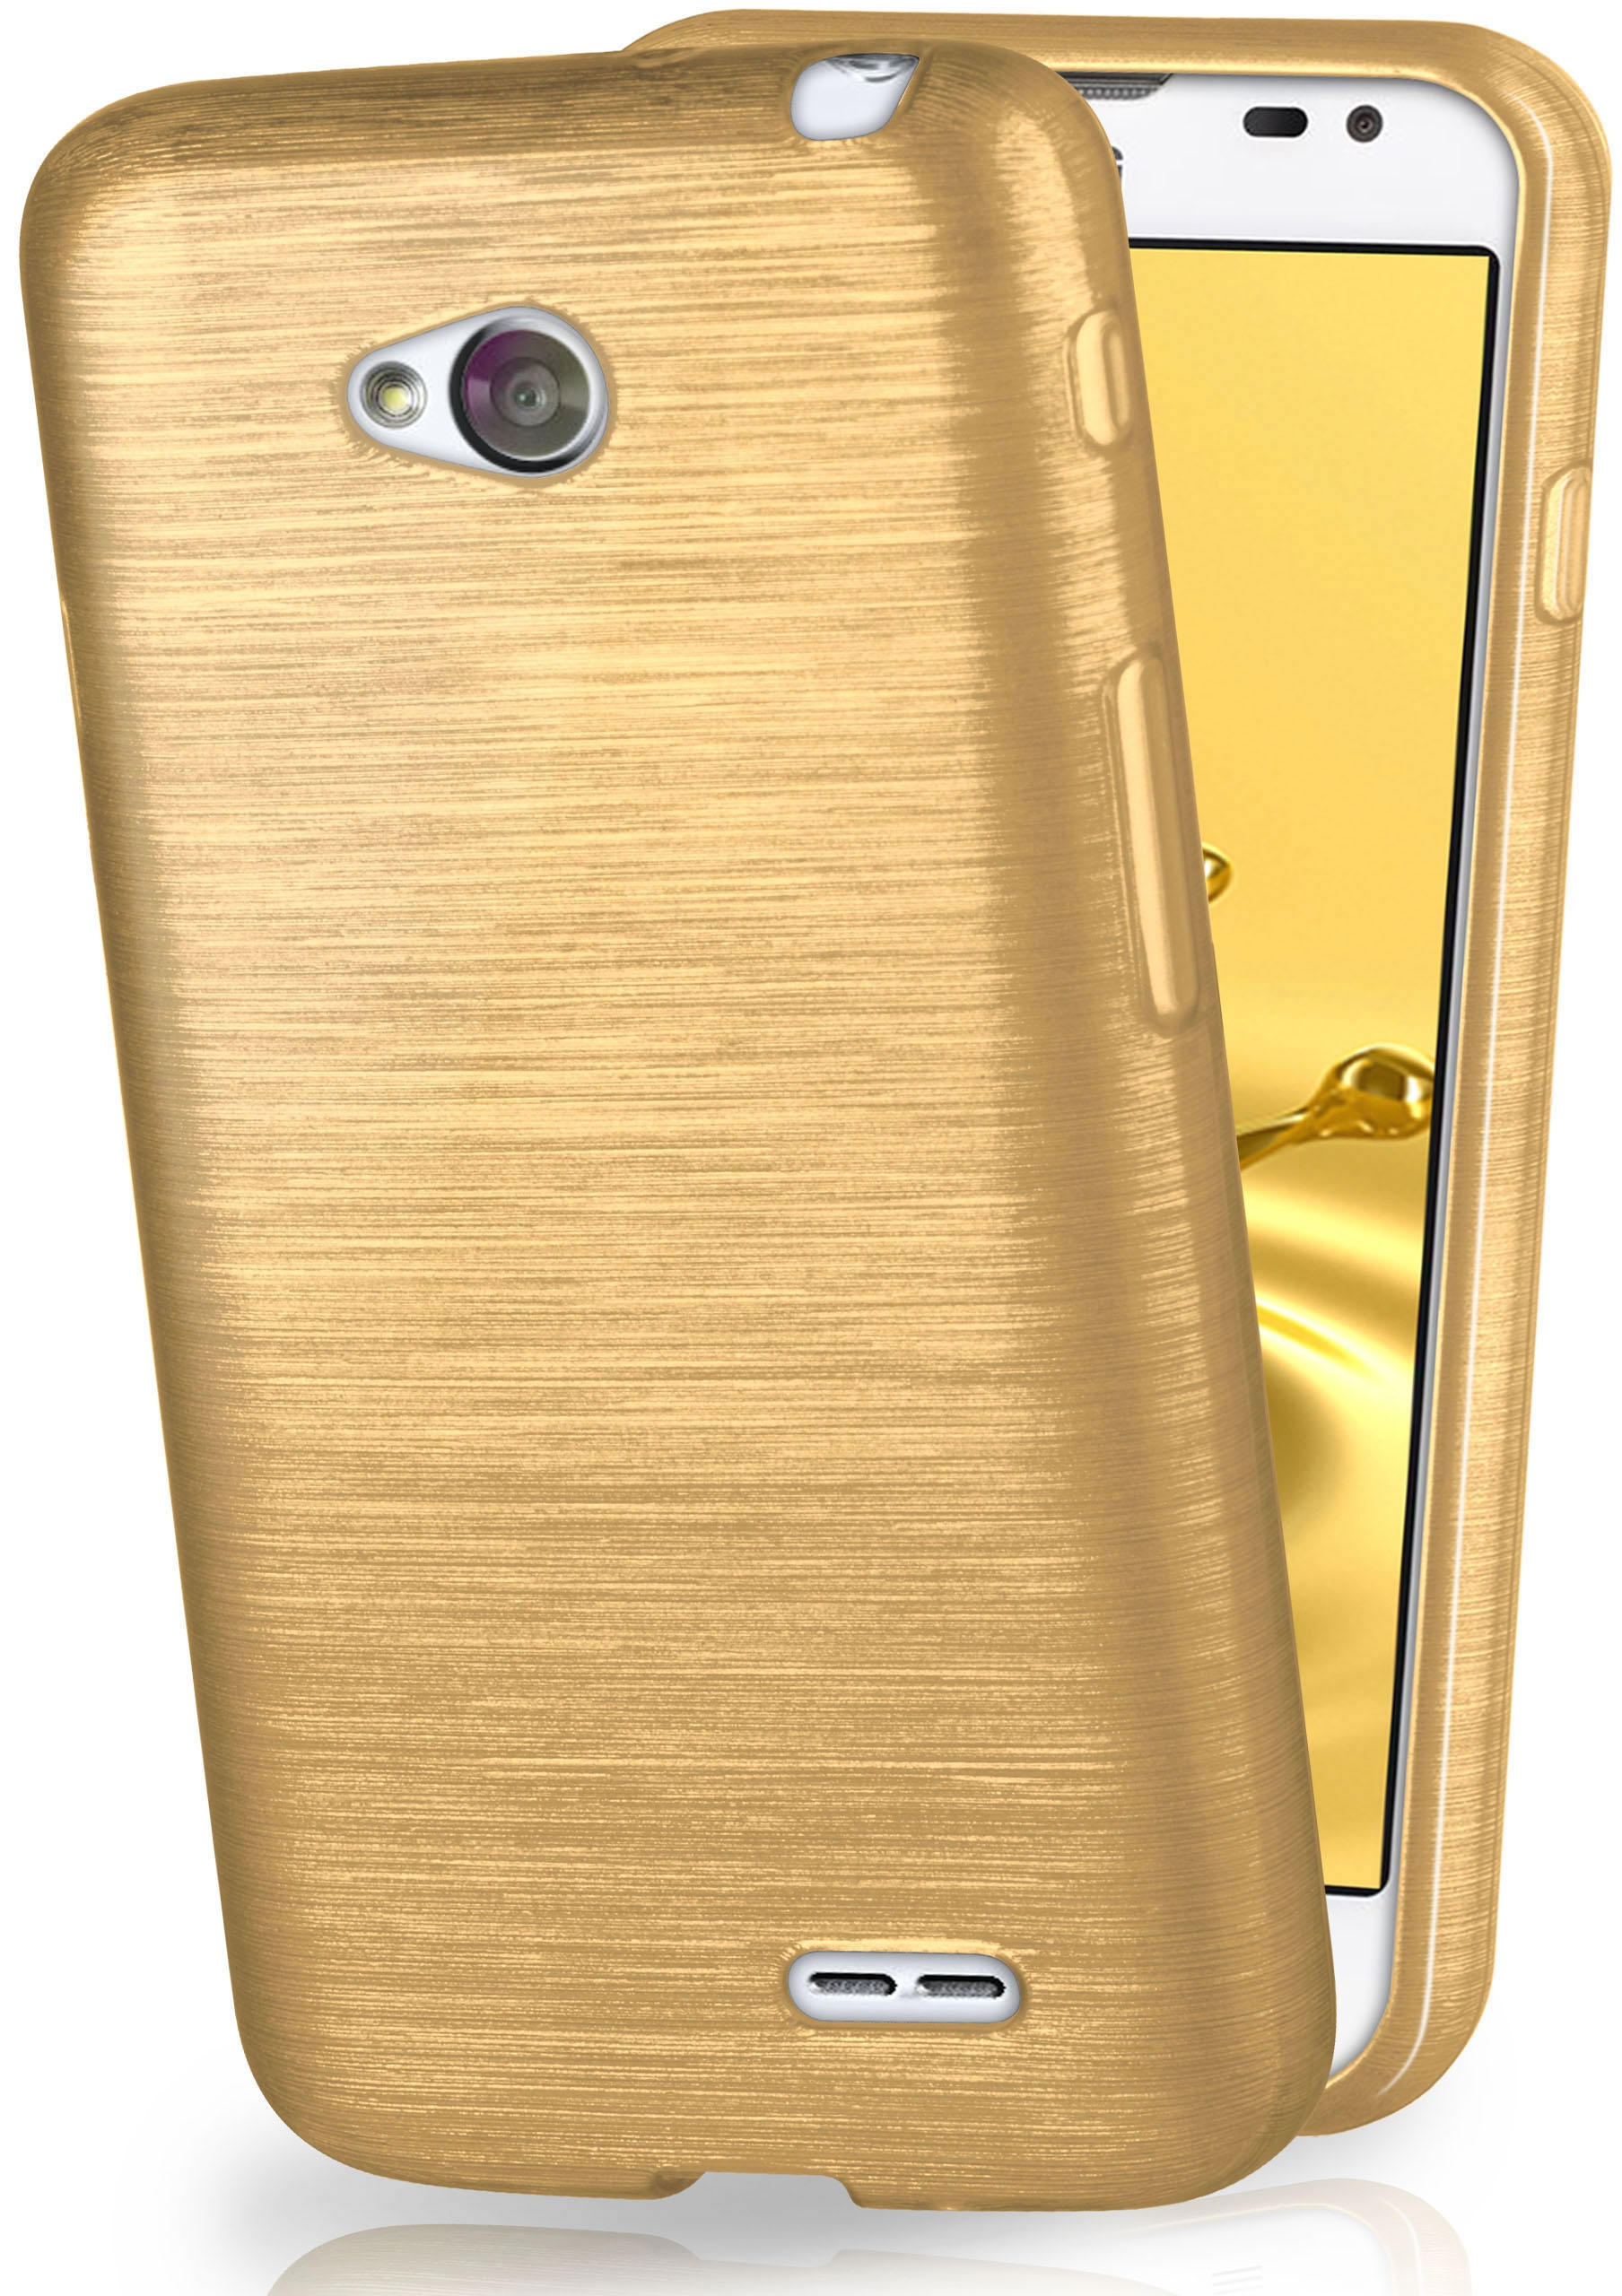 Case, L70 LG, MOEX / L65, Backcover, Brushed Ivory-Gold